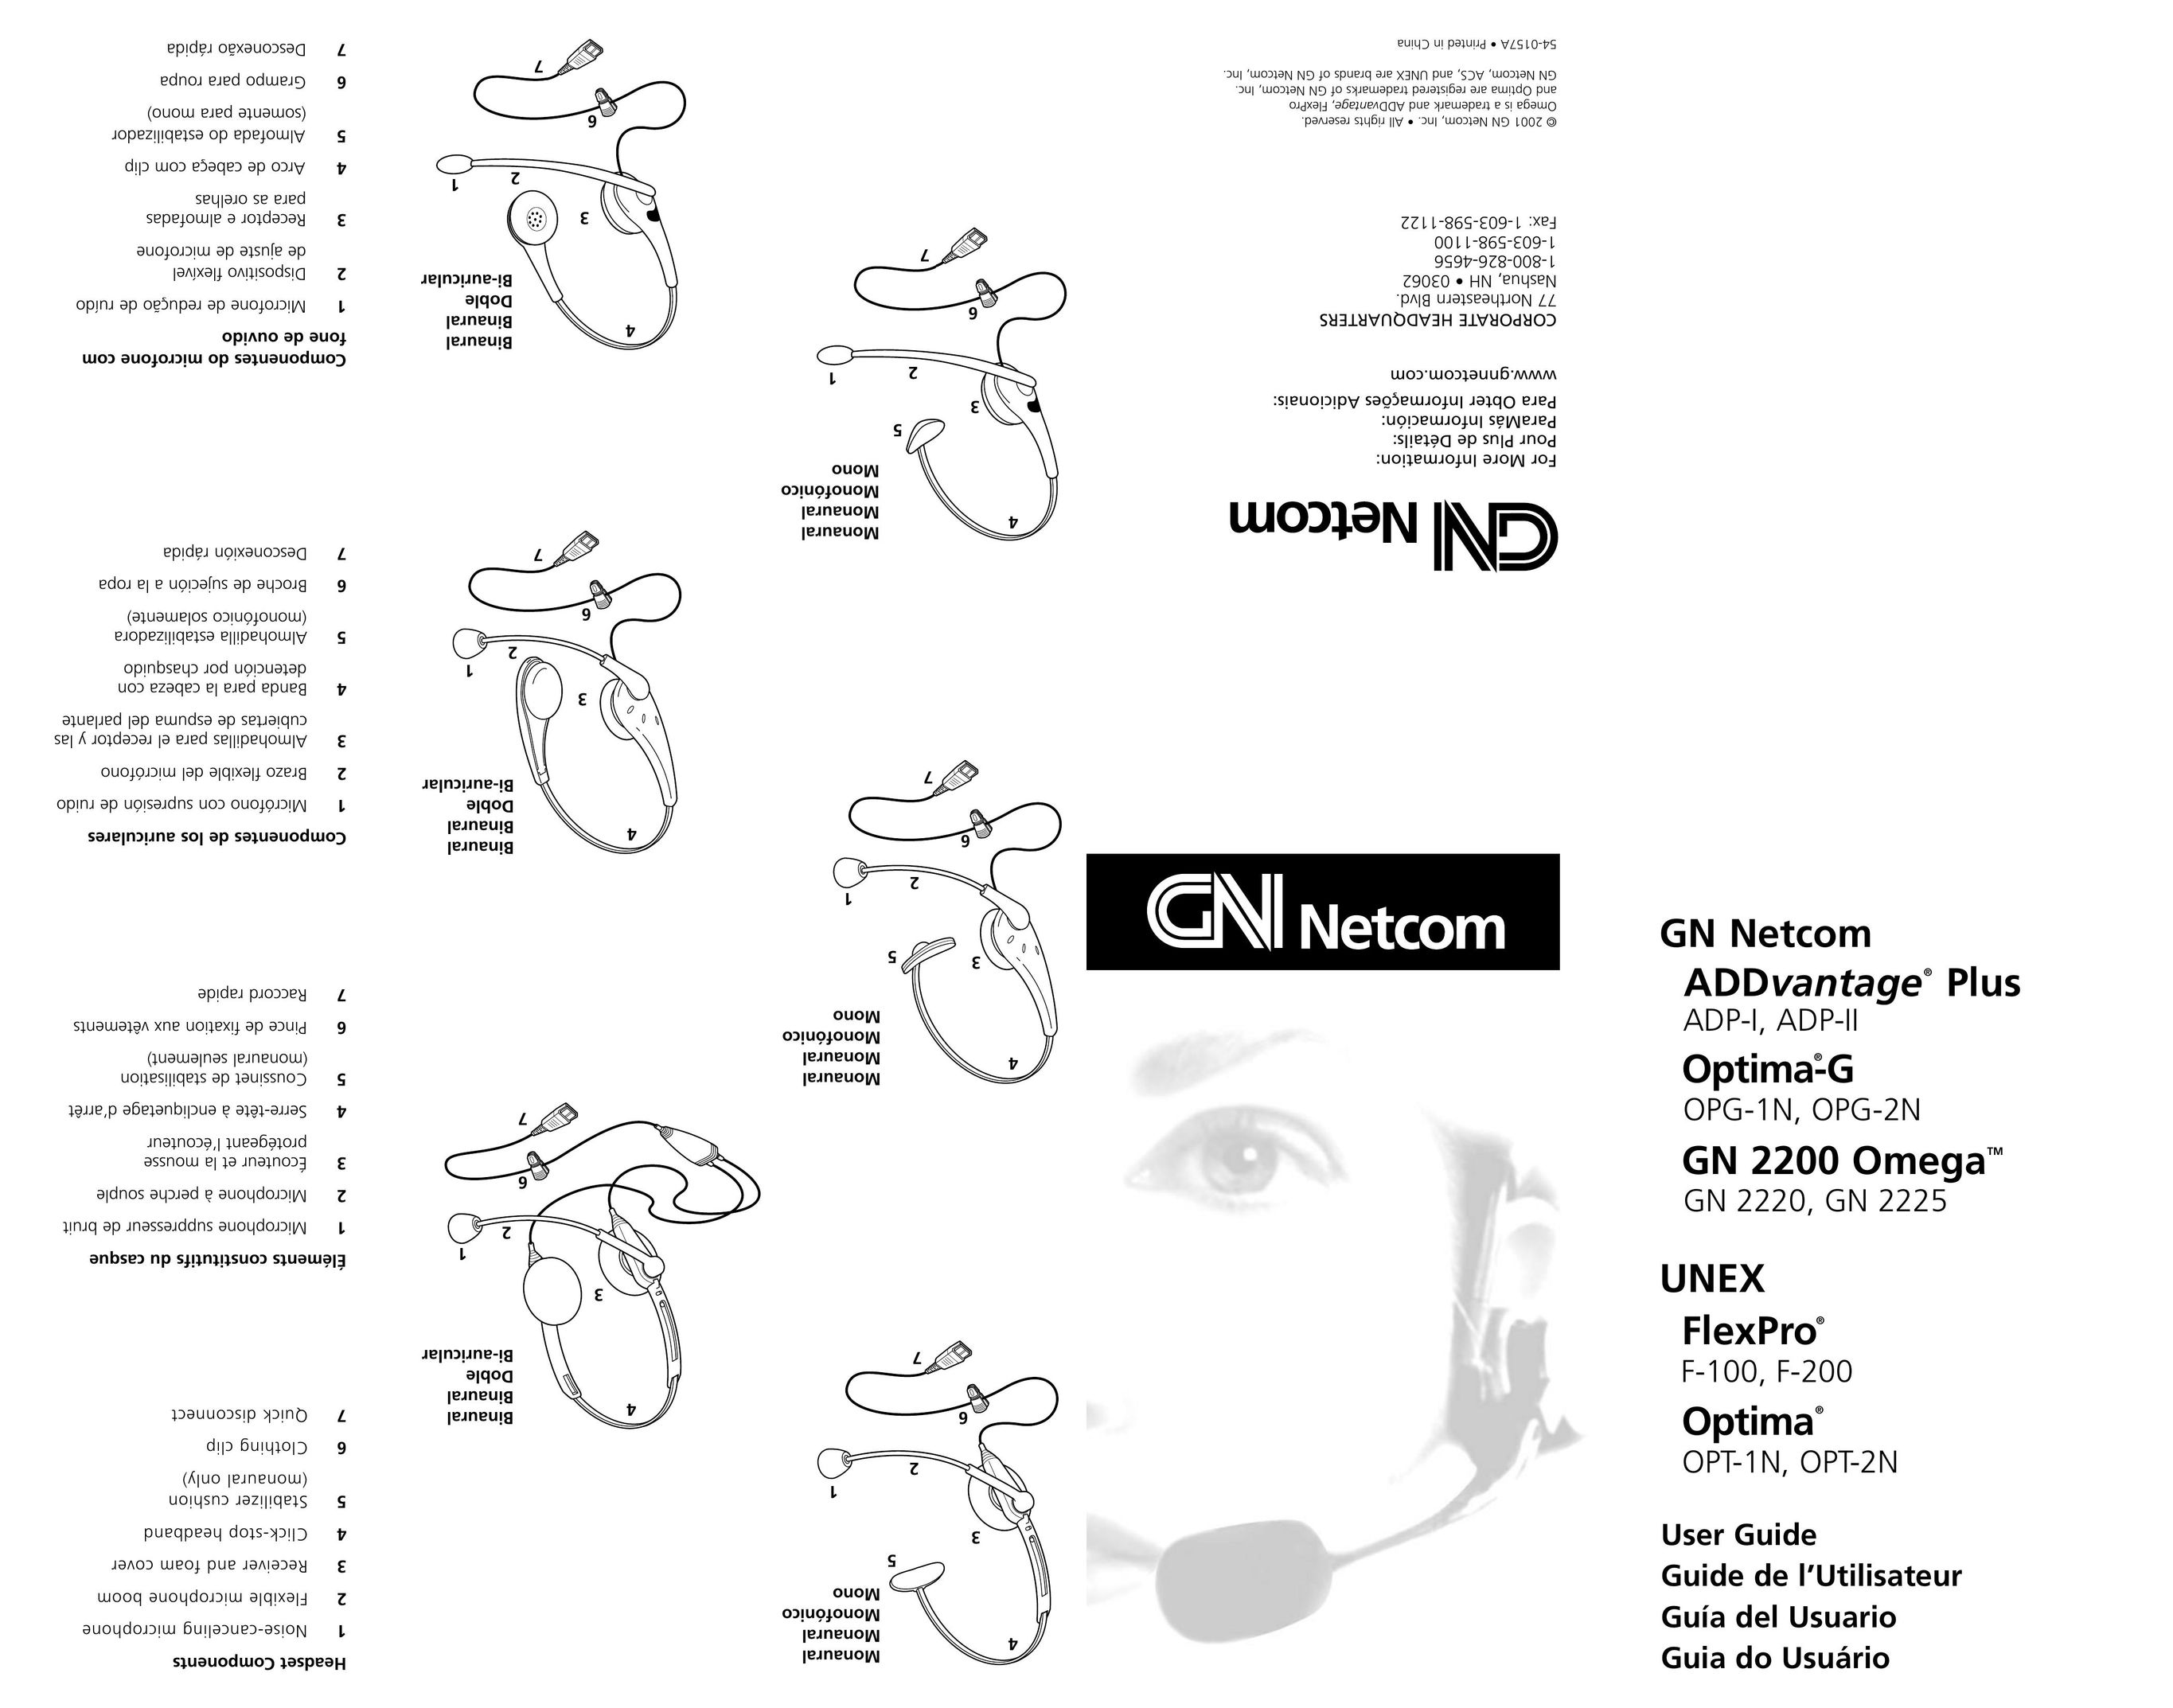 GN Netcom ADP-I, ADP-II, OPG-1N, OPG-2N, GN 2220, GN 2225, F-100, F-200, OPT-1N, OPT-2N Headphones User Manual